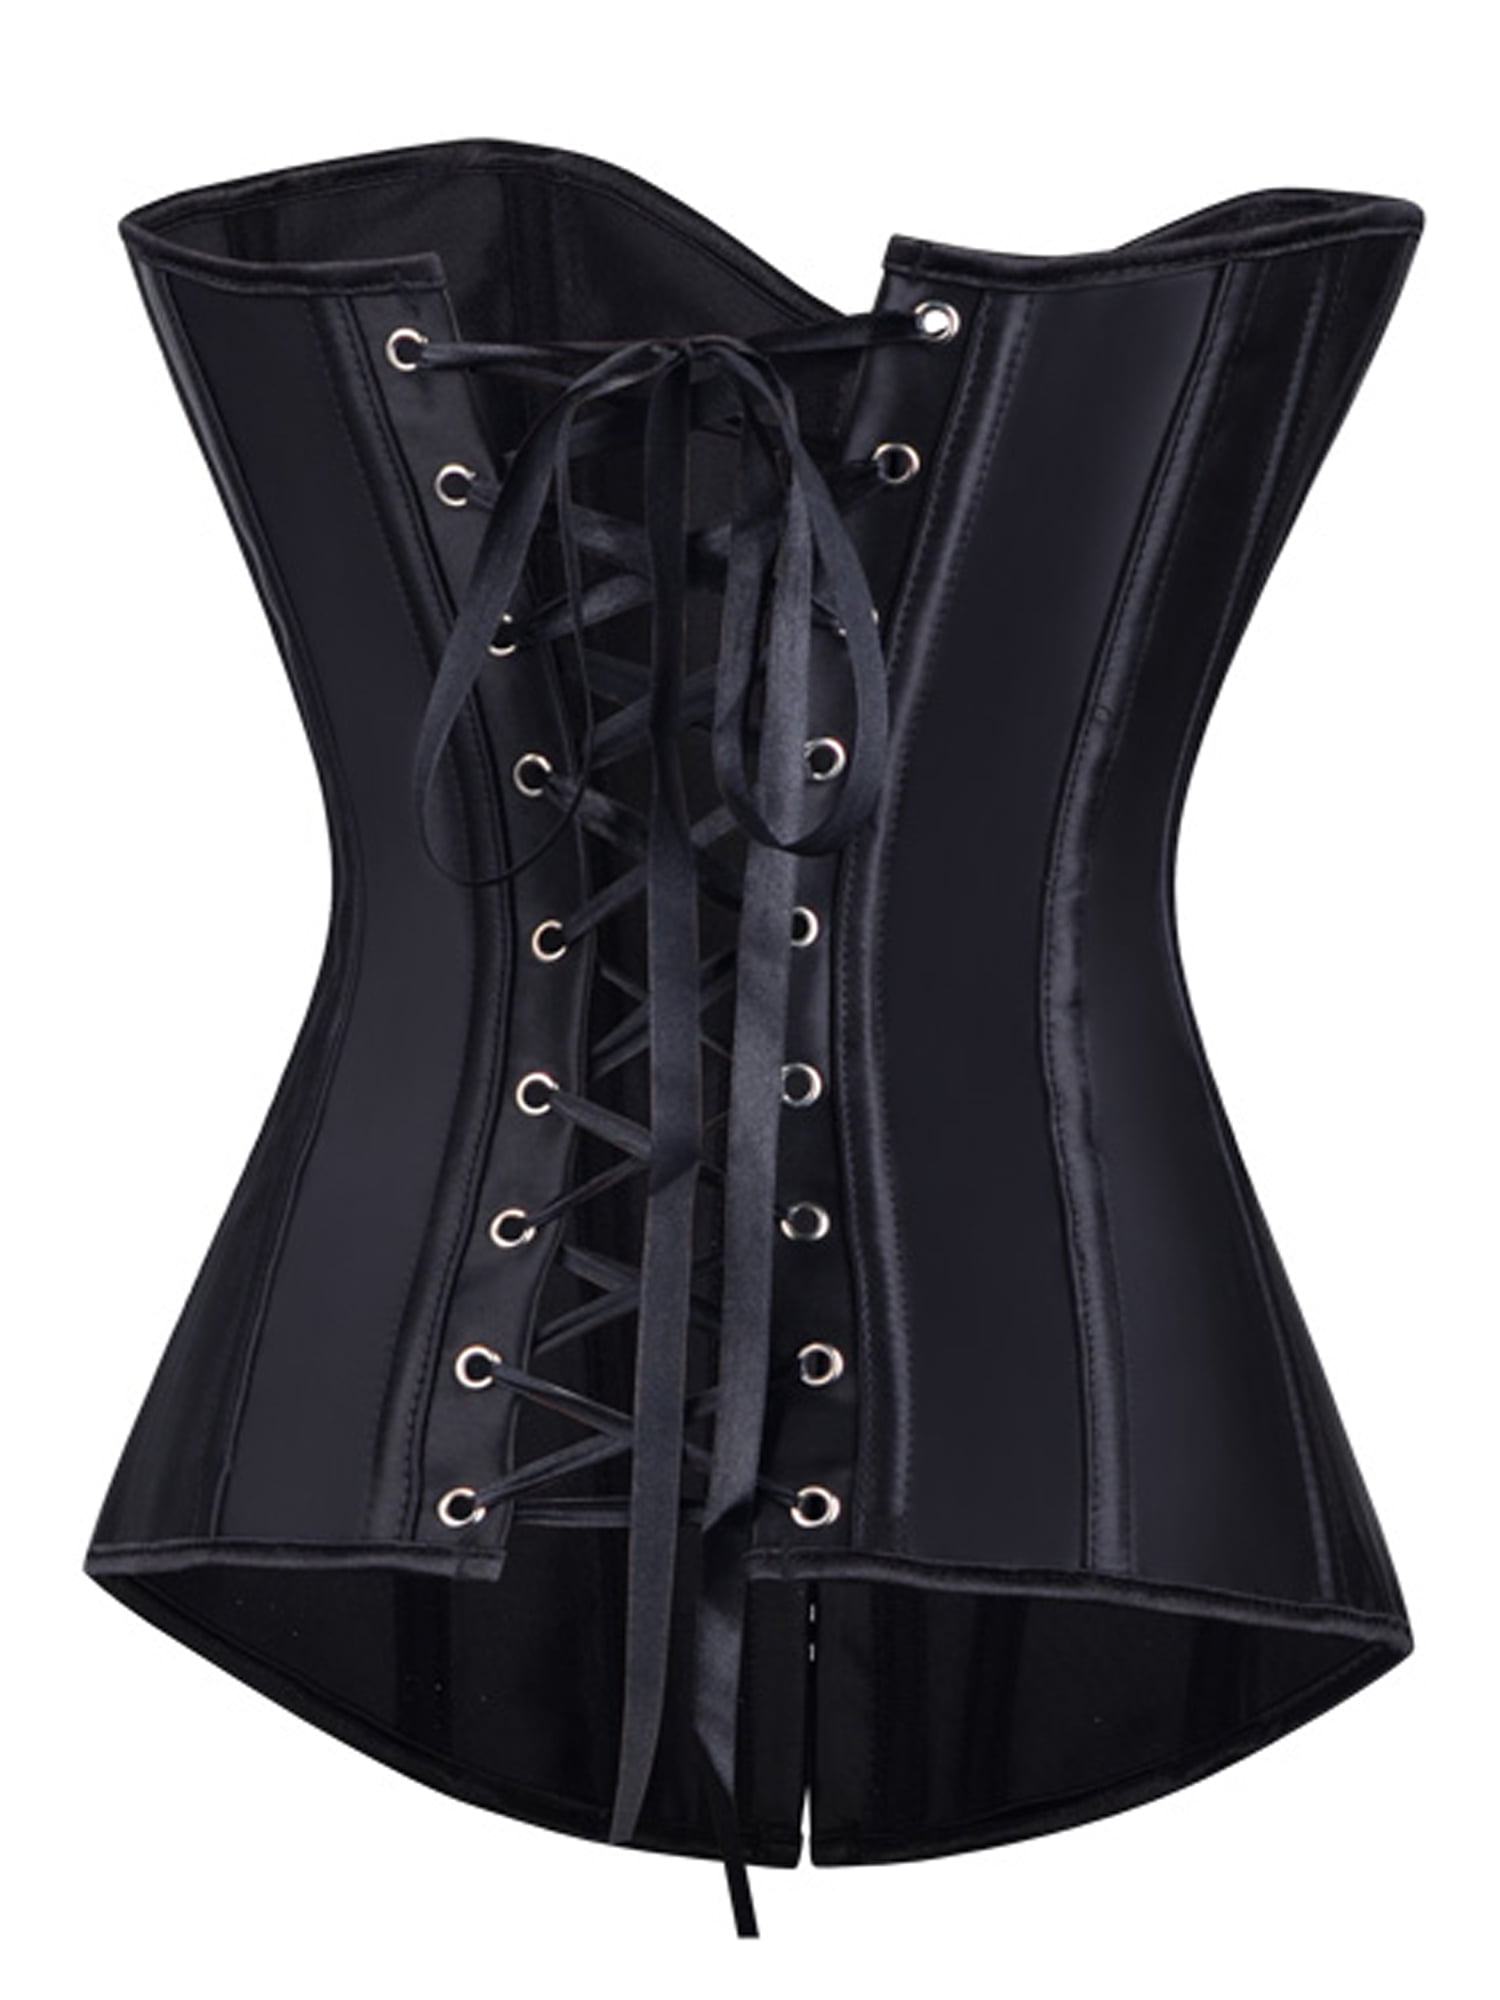 Plus size women corset bustier top lace up waist training corsets black ...